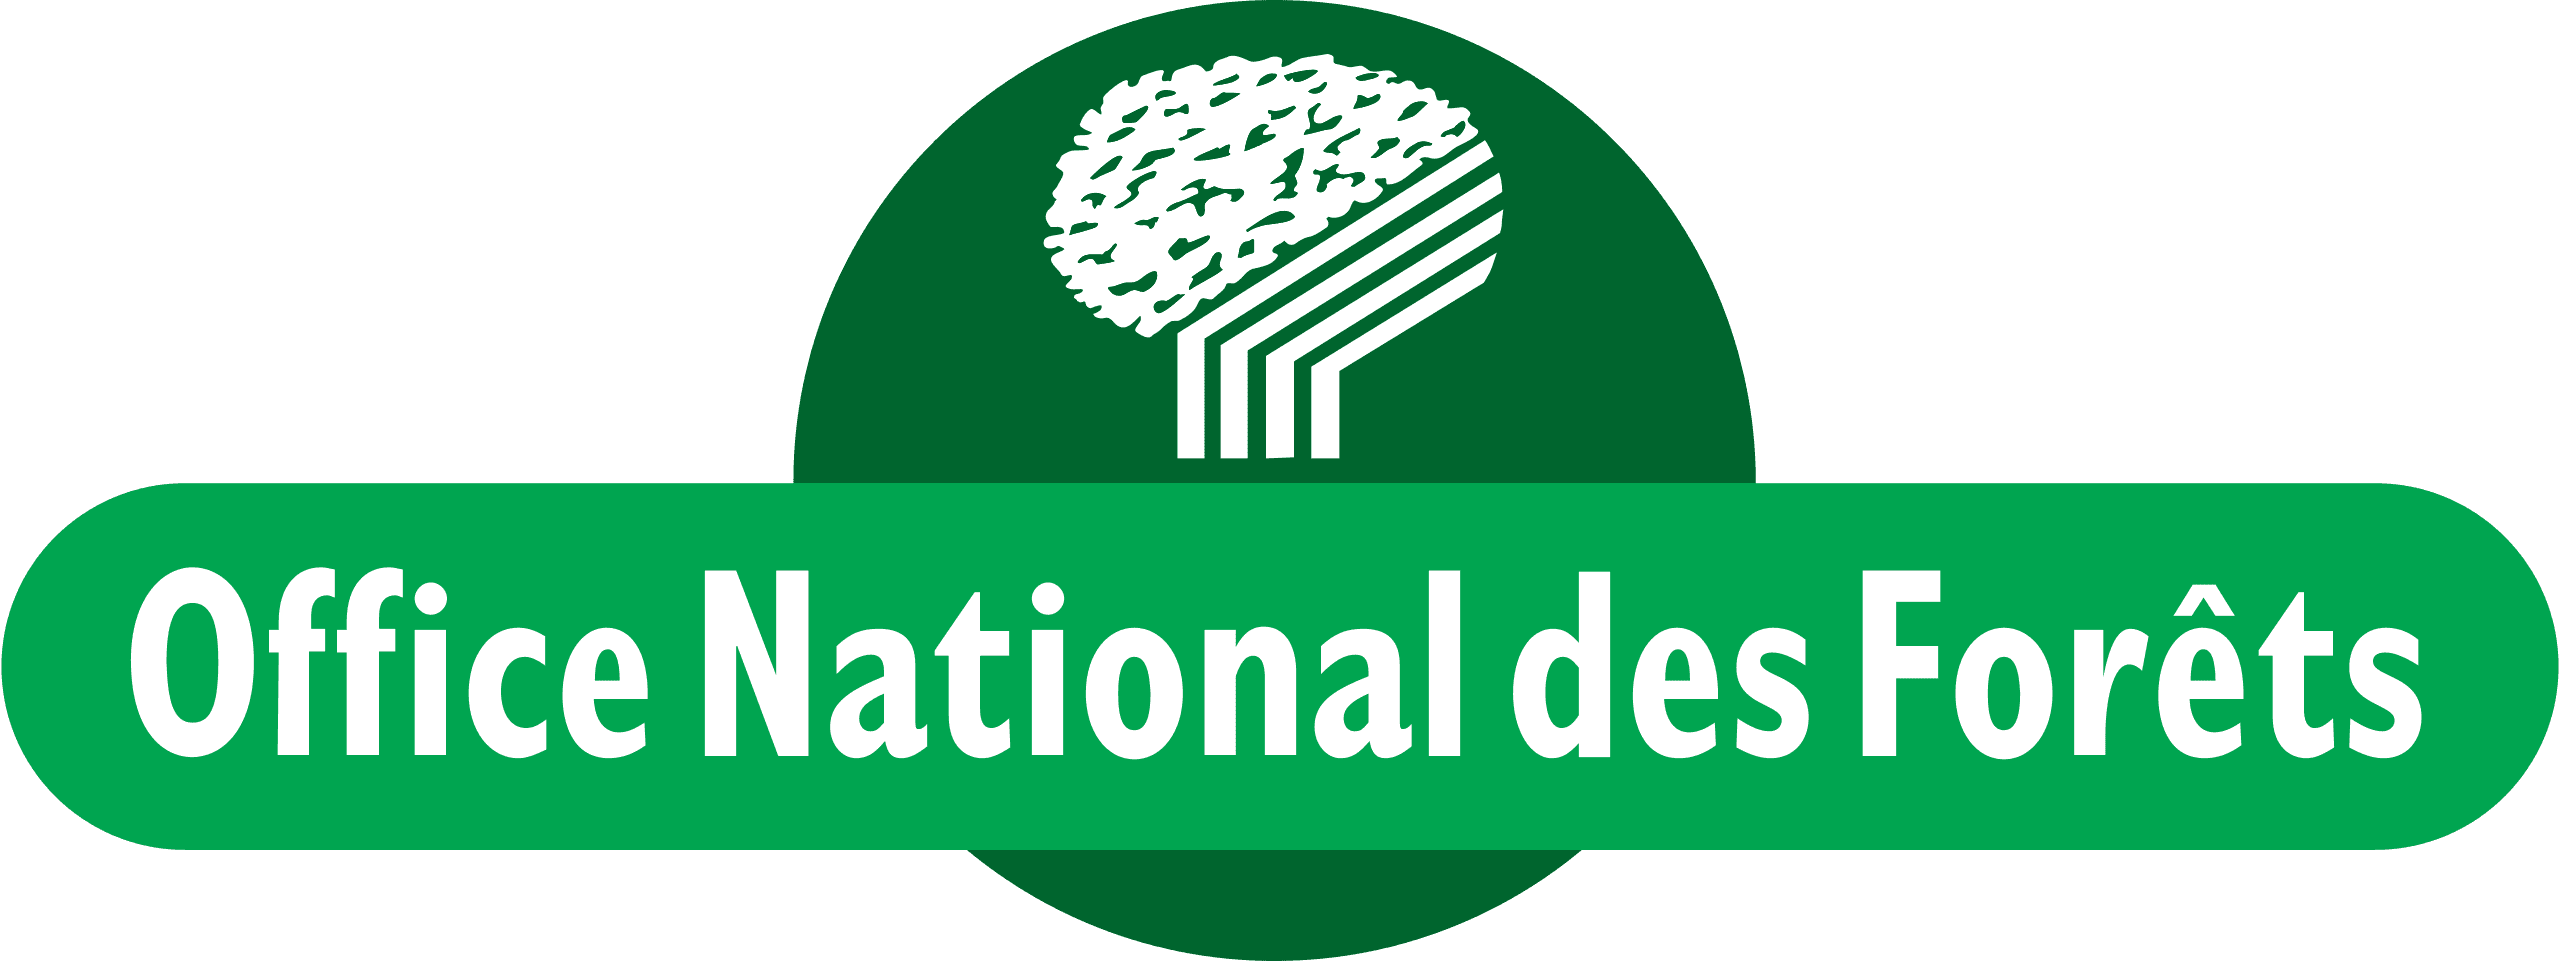 Office National des Forêts (ONF)